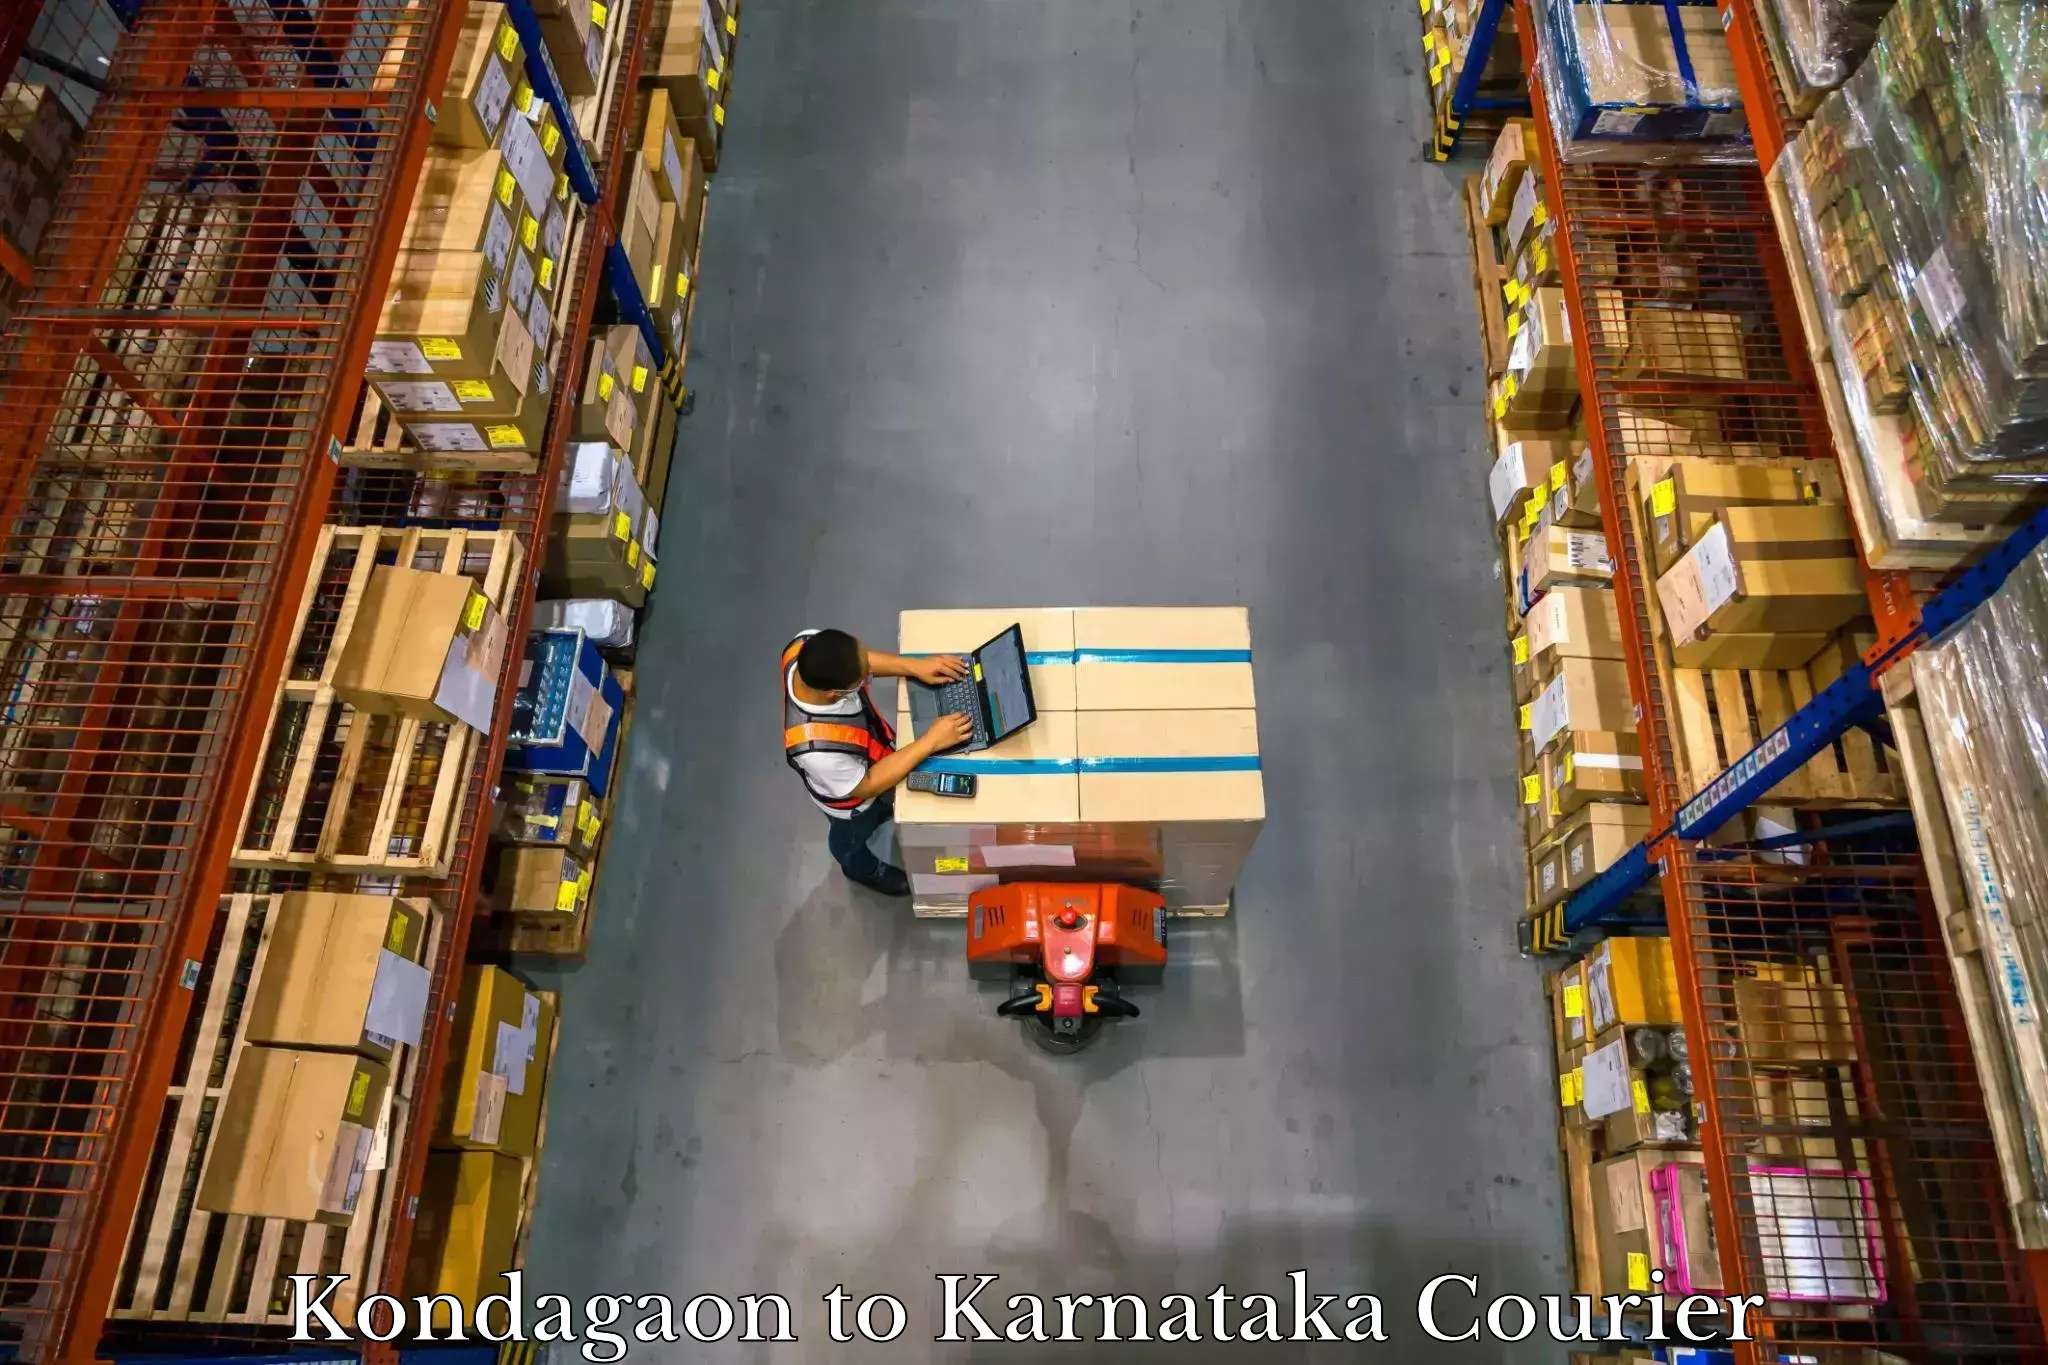 Luggage transit service Kondagaon to Karnataka